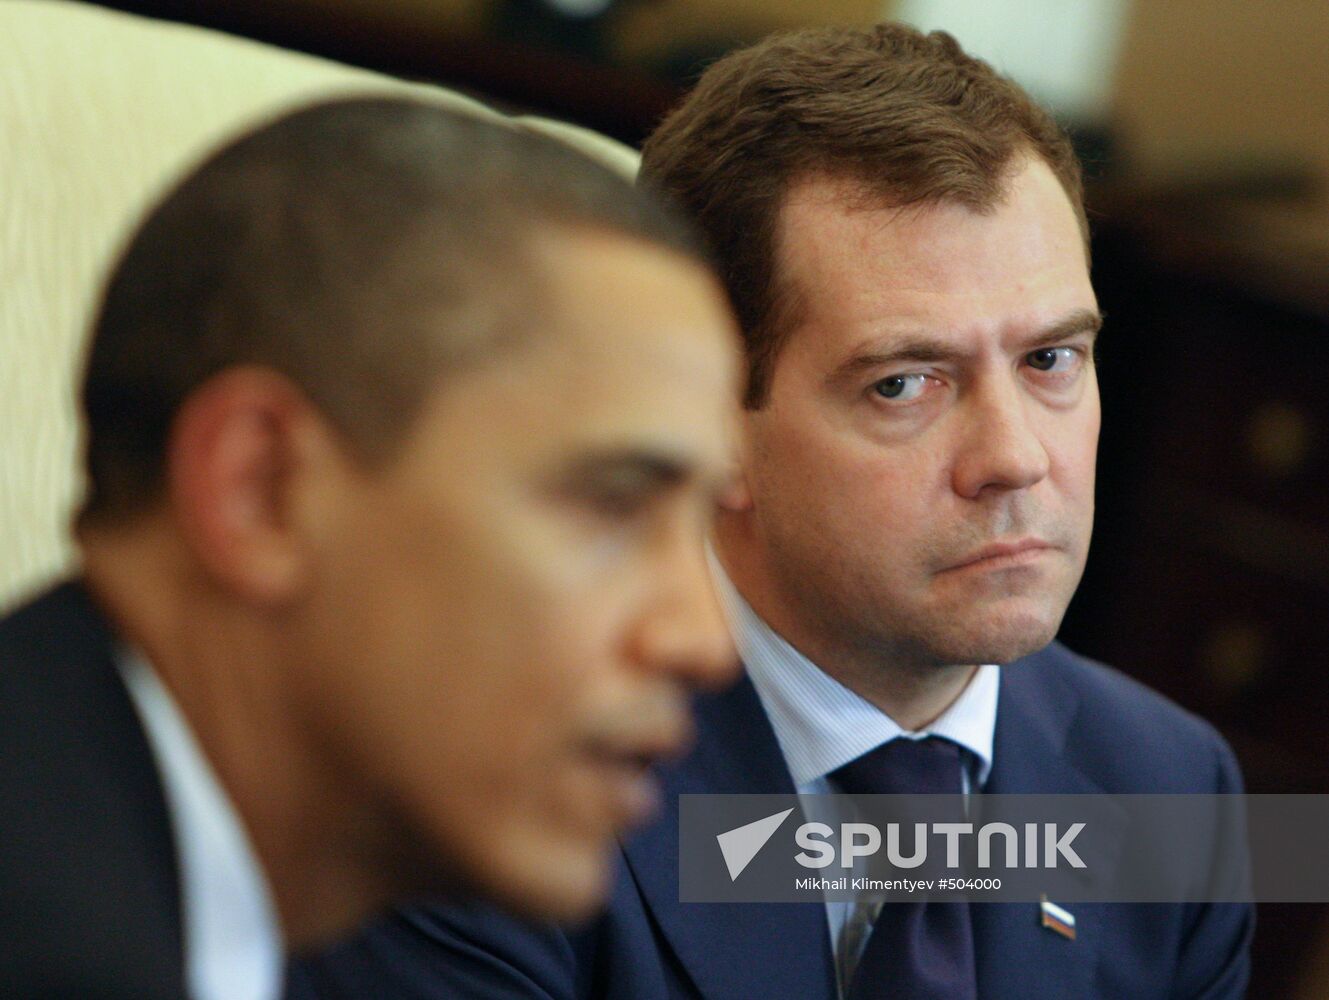 Russian, US Presidents meet at APEC summit